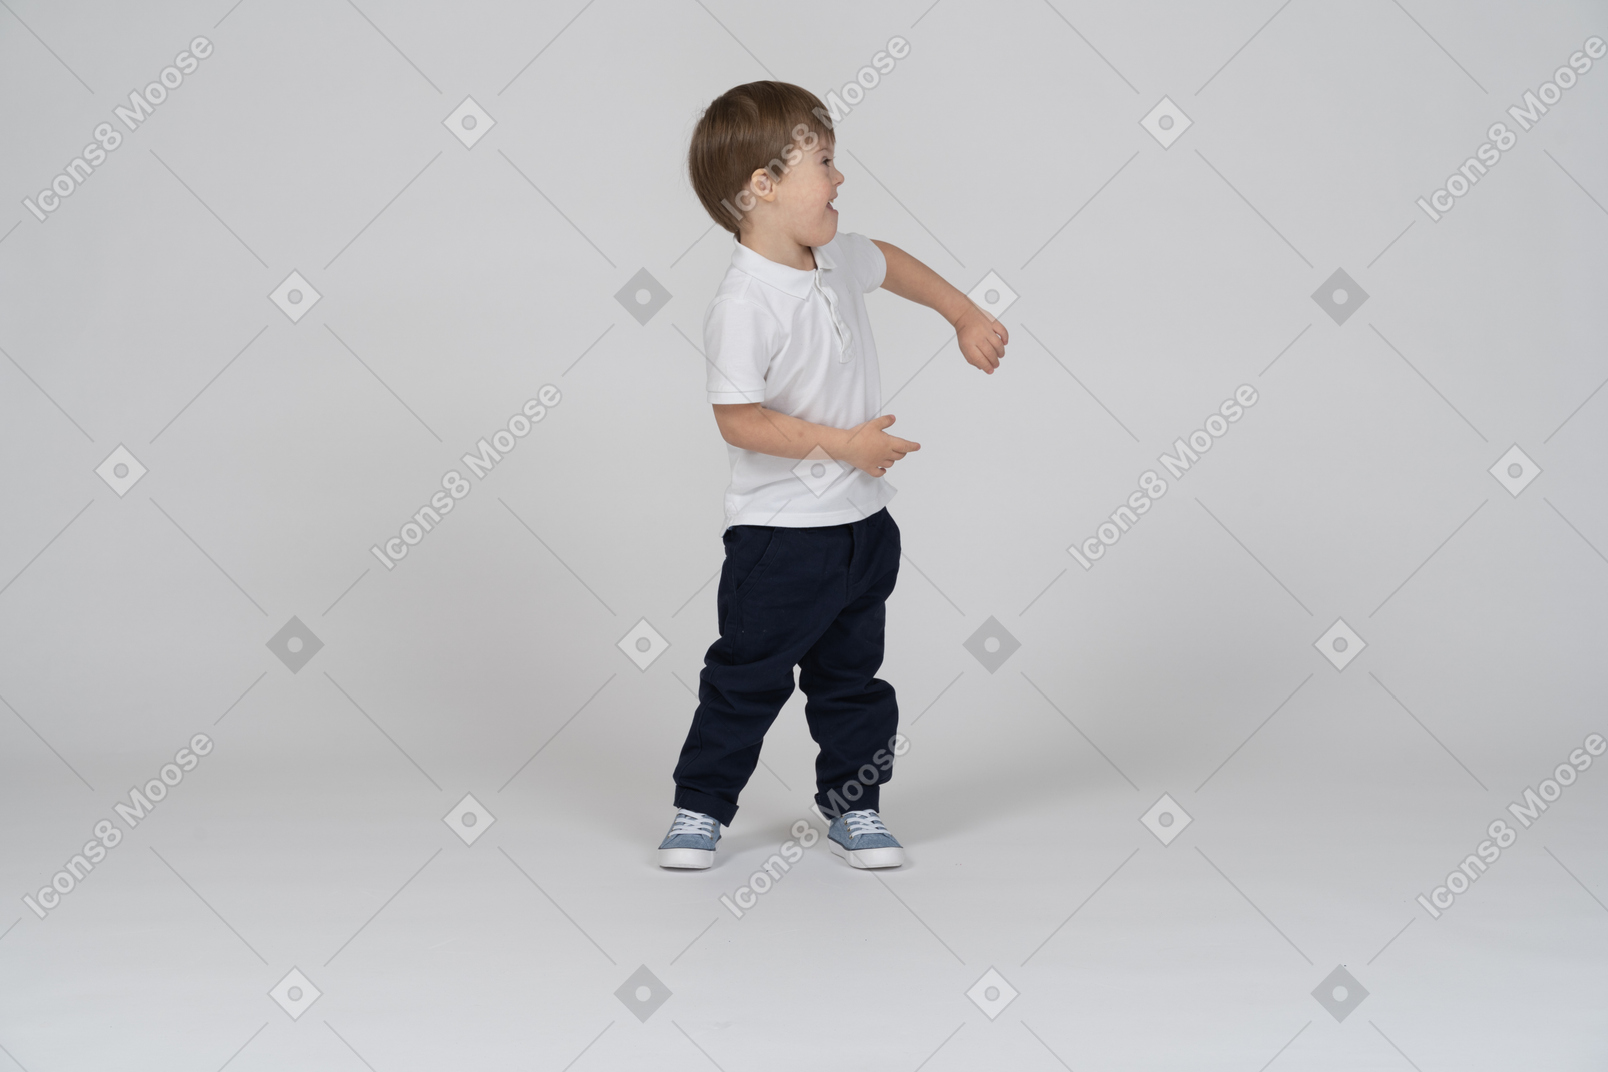 Niño alegre moviendo sus brazos alrededor